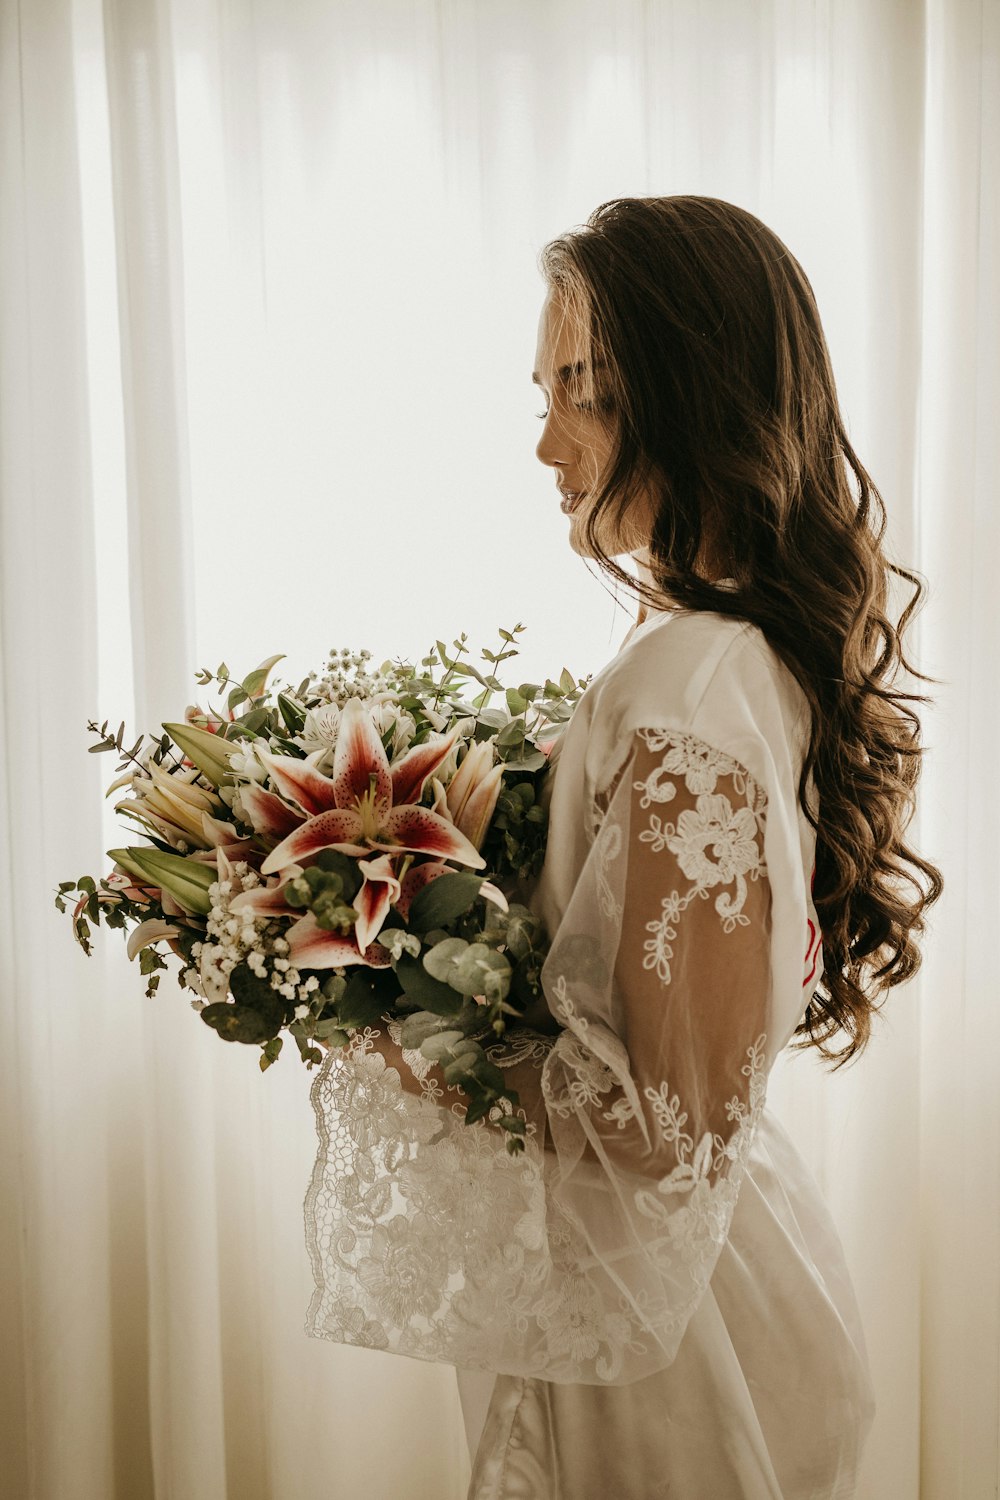 흰 드레스를 입은 여자가 꽃다발을 들고 있다